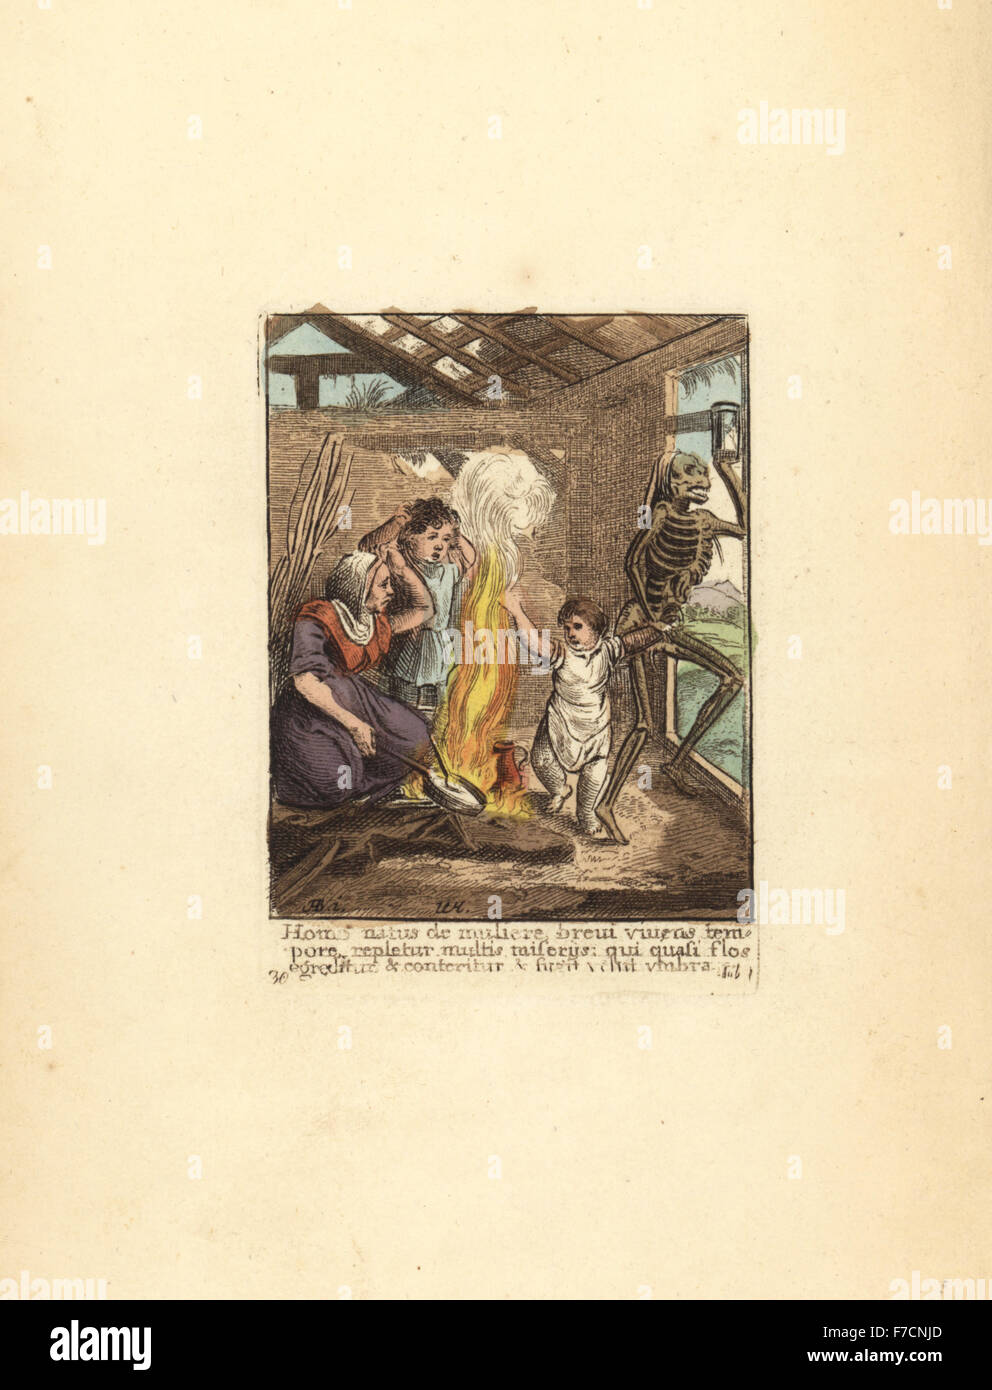 Squelette de la mort en prenant un enfant de sa mère veuve, dans une masure abandonnée. La gravure sur cuivre coloriée par Wenceslaus Hollar à partir de la danse de la mort de Hans Holbein, Coxhead, Londres, 1816. Banque D'Images